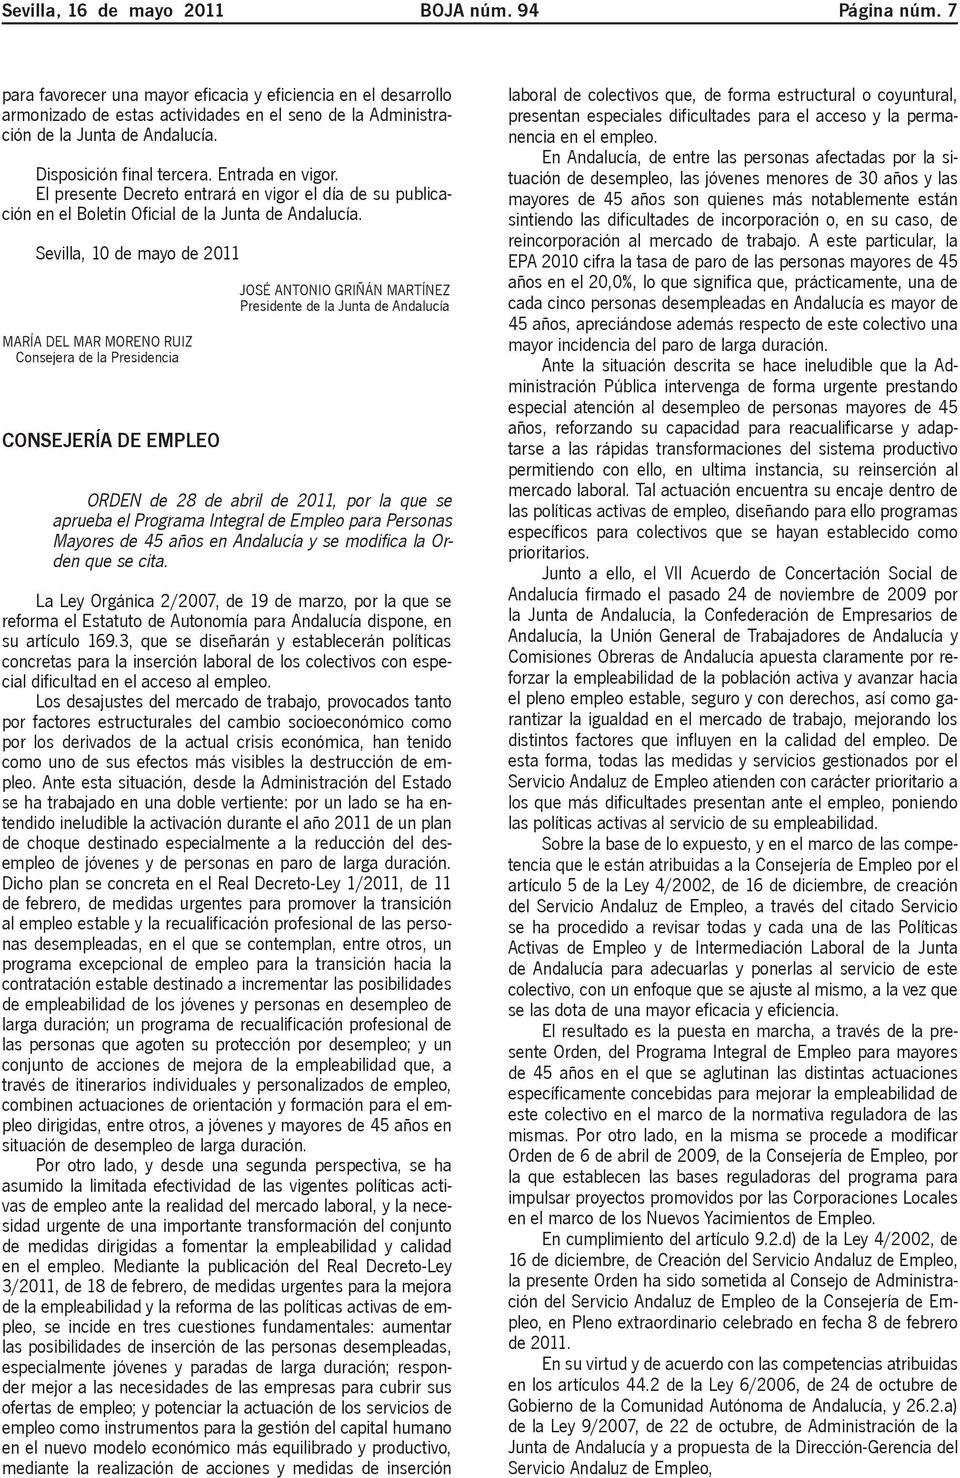 El presente Decreto entrará en vigor el día de su publicación en el Boletín Oficial de la Junta de Andalucía.